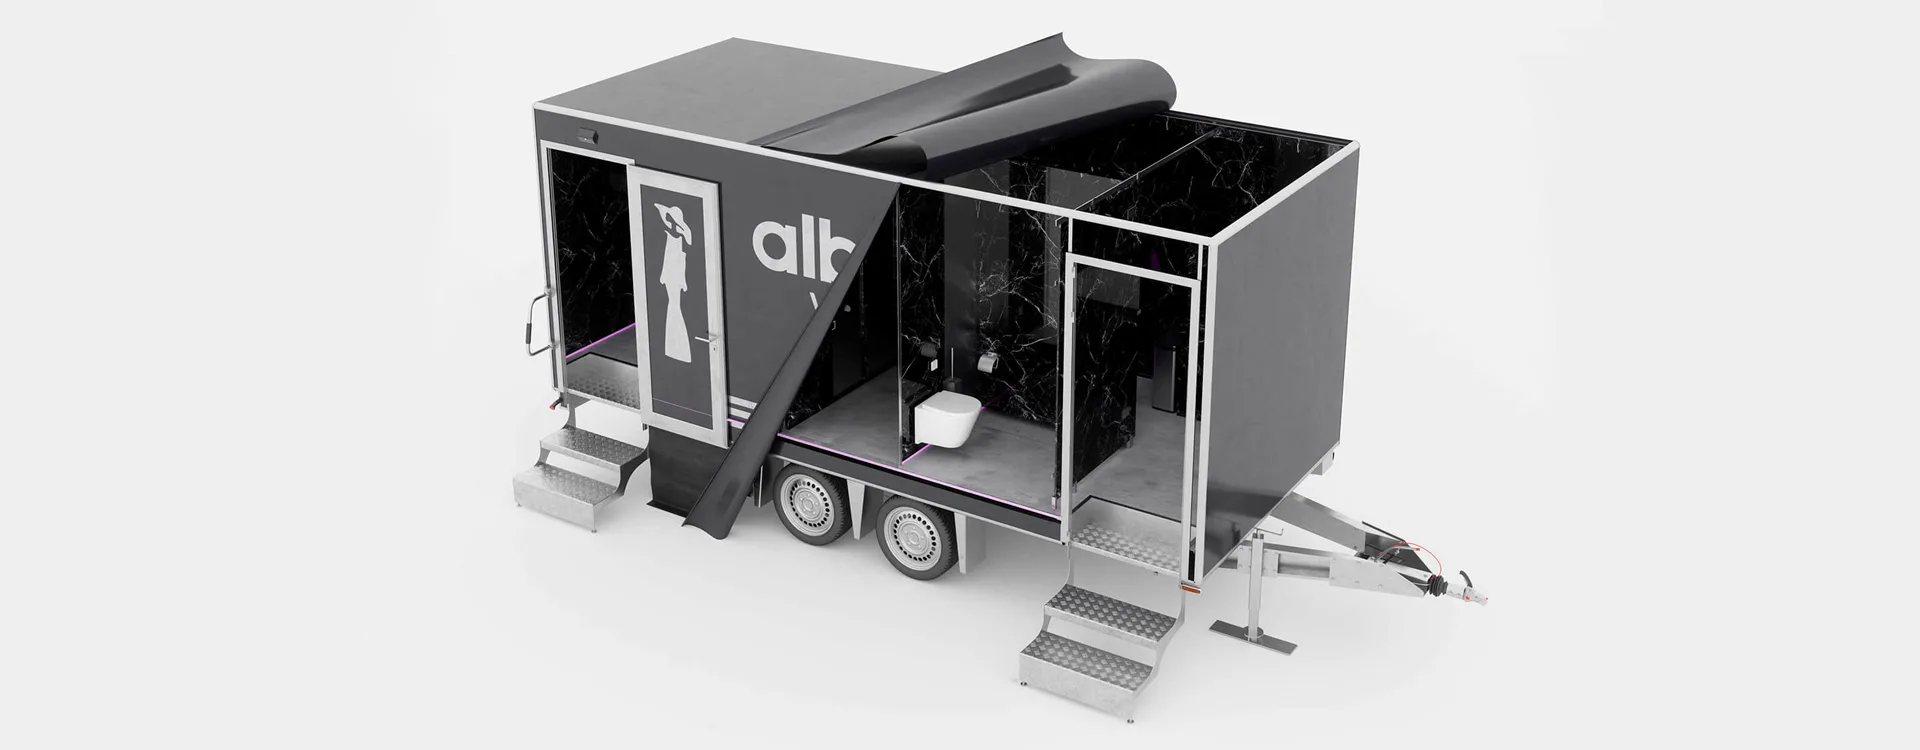 albawc-vip-trailer